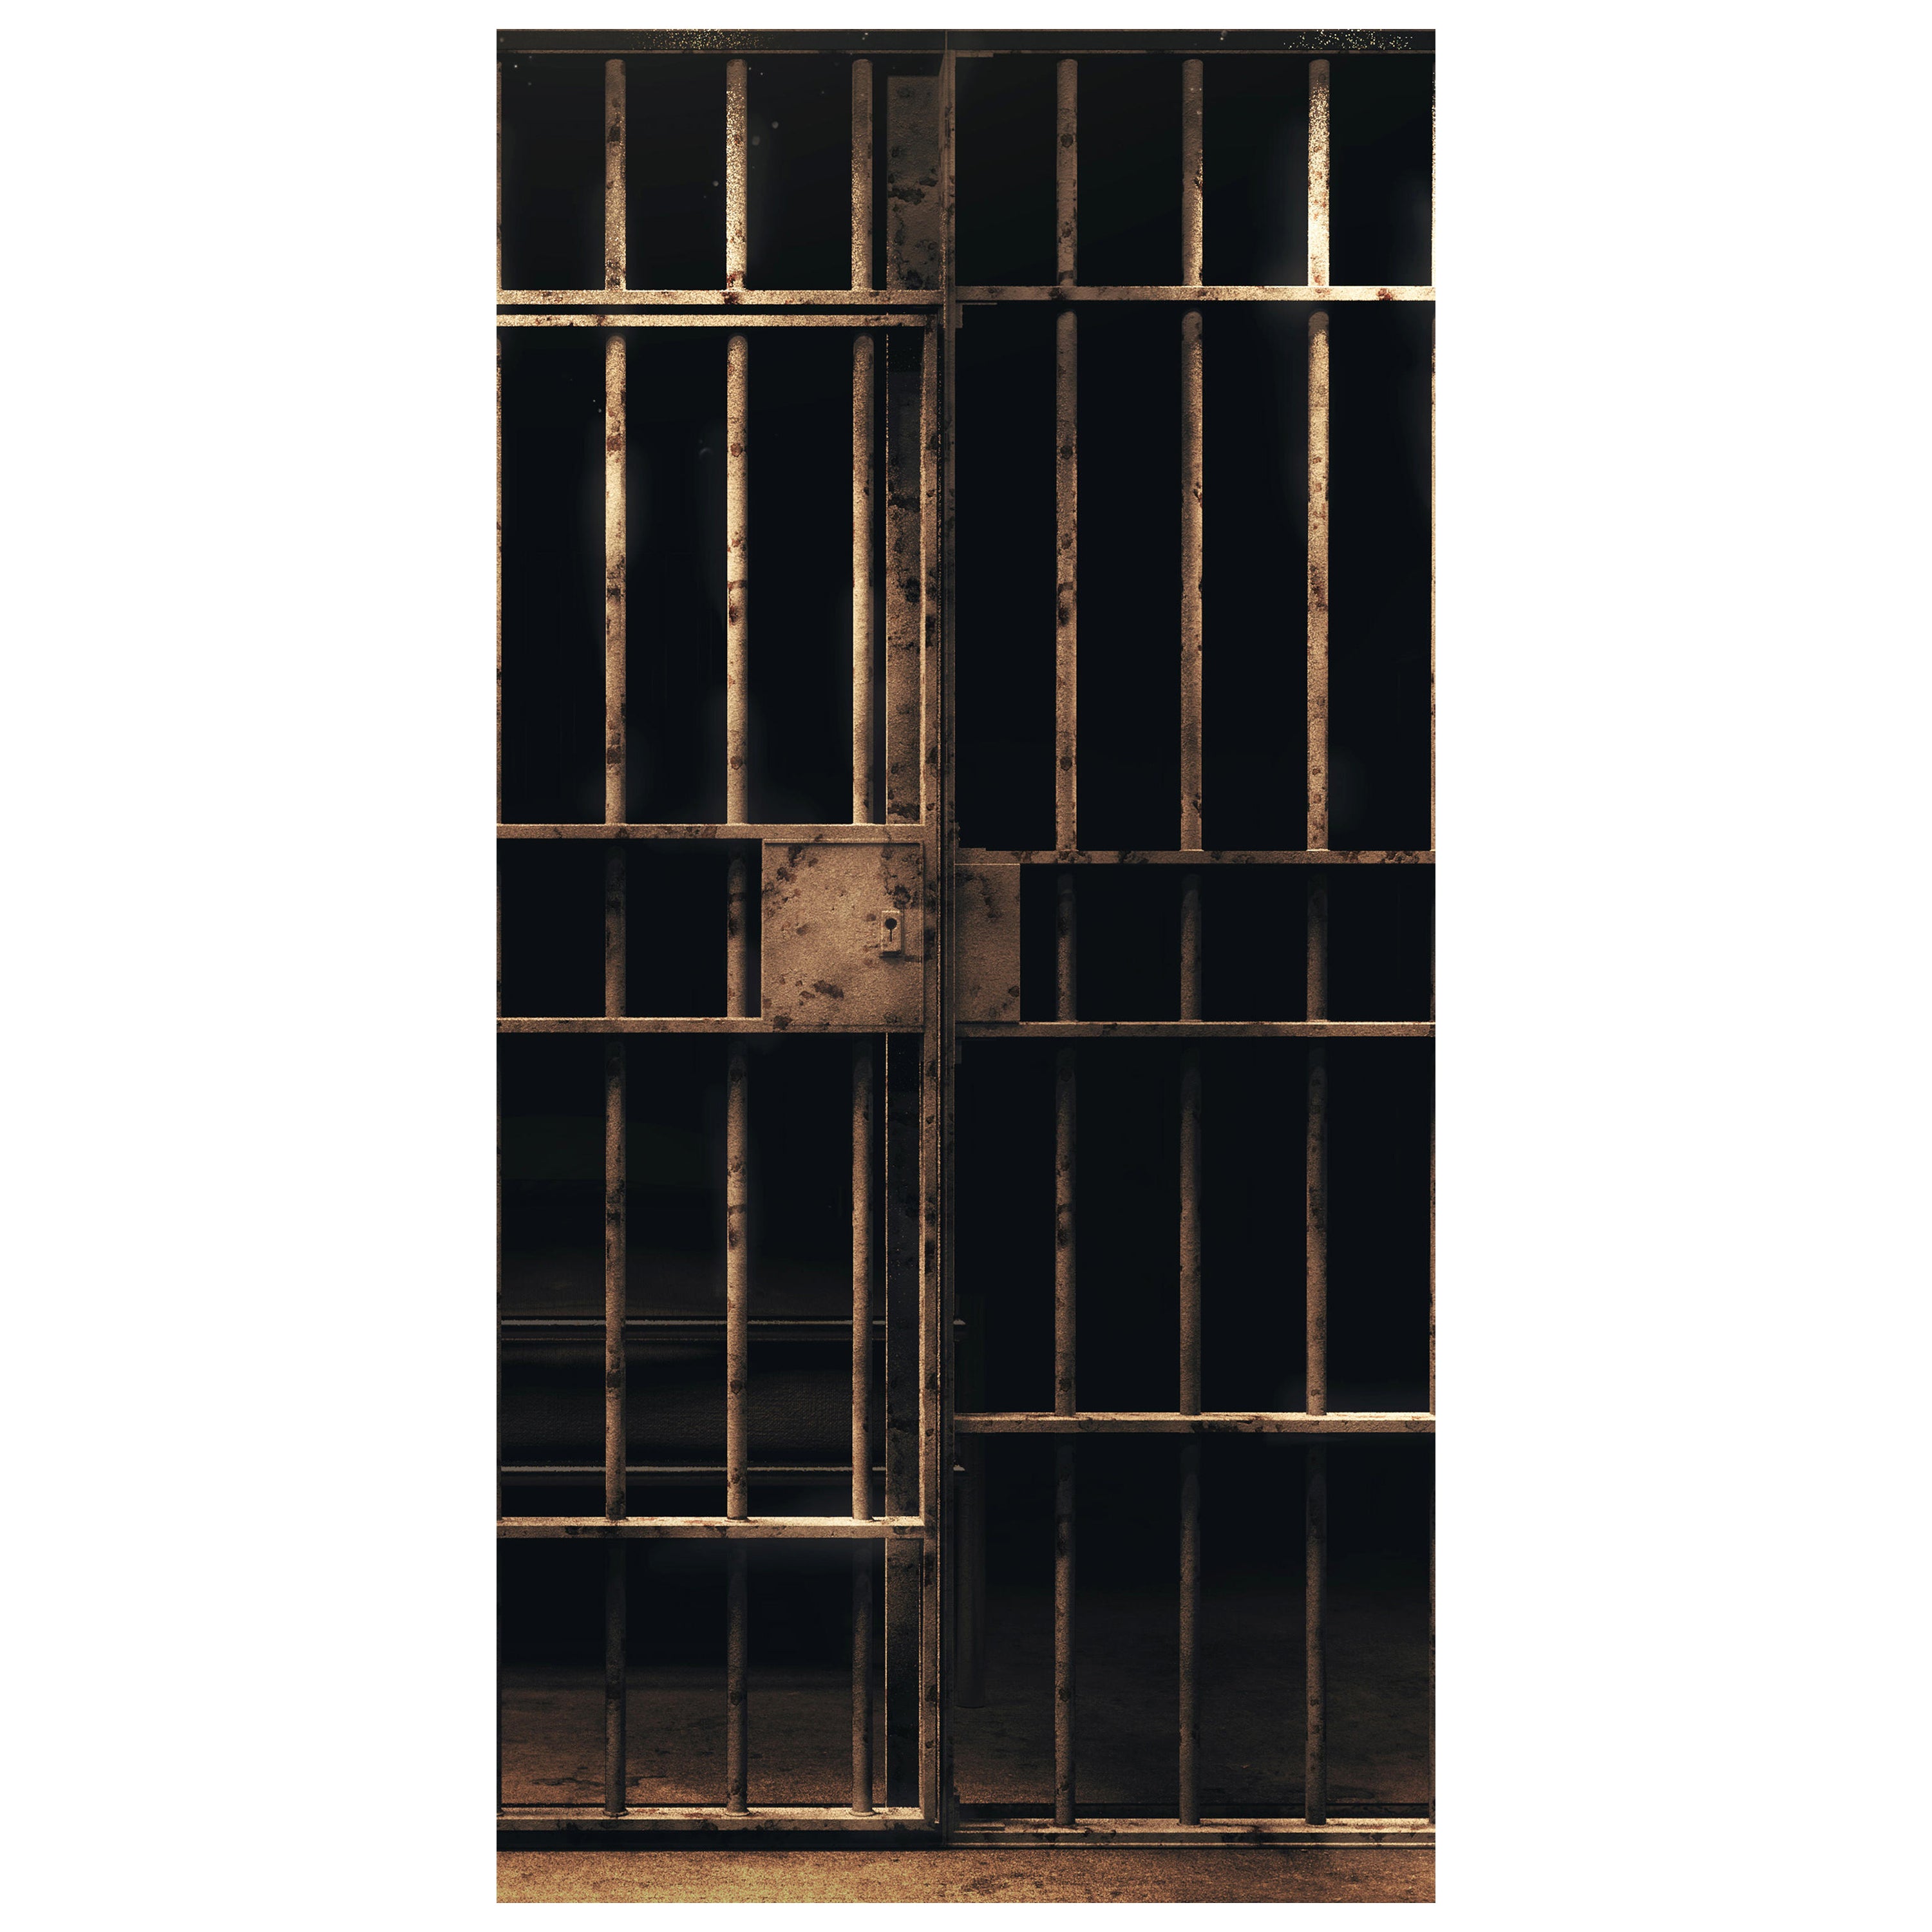 Türtapete Zellentür, Gefängnis, Knast, Gitter M1230 - Bild 2